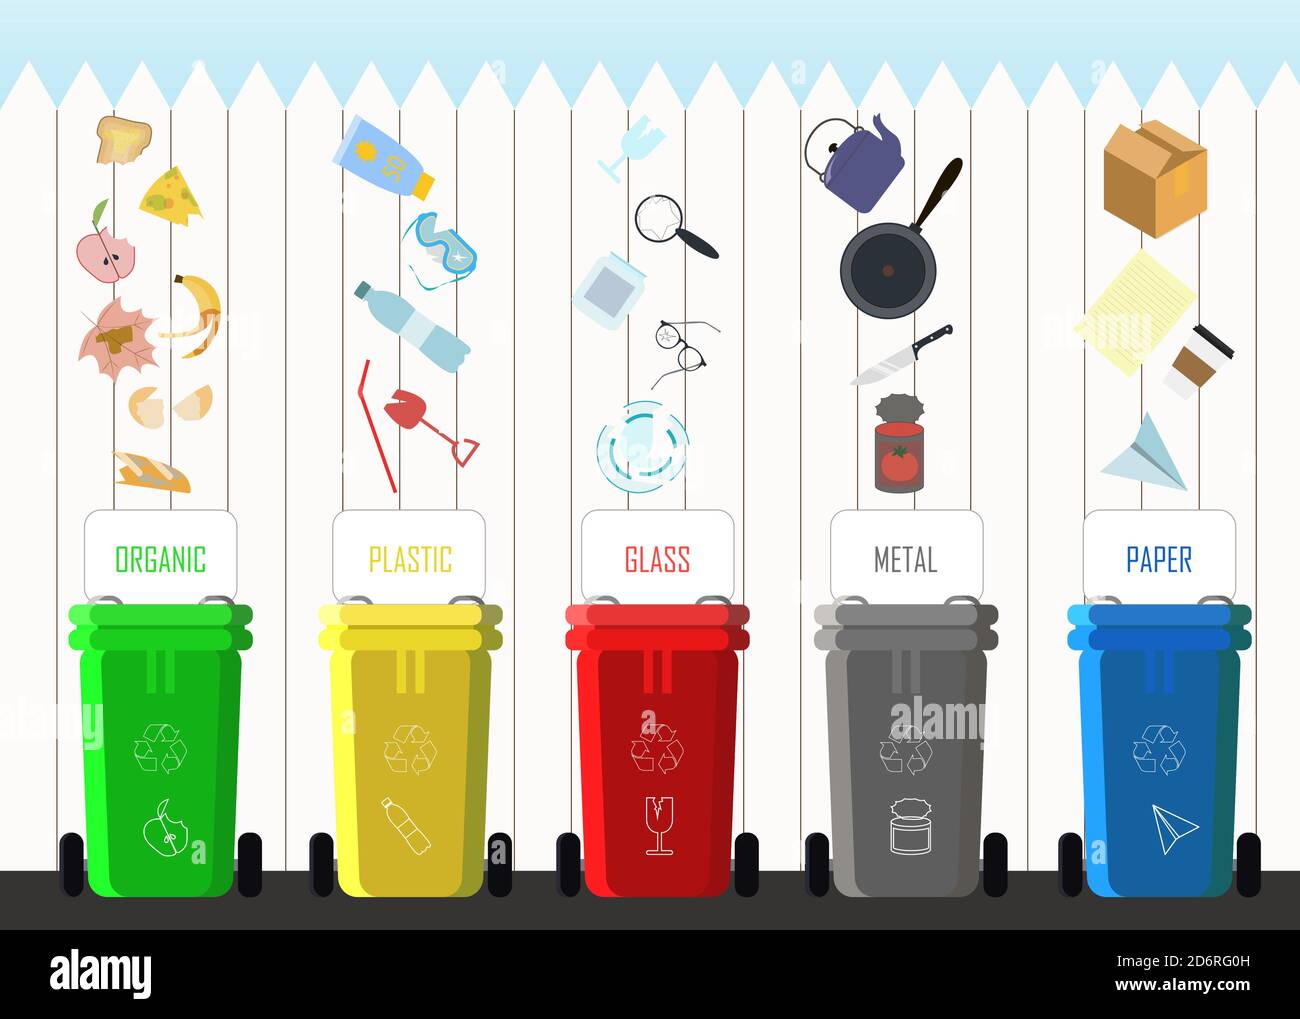 Illustration vectorielle plate du tri des déchets dans les catégories  plastique, organique, métal, papier, verre. Poubelle avec déchets triés  pour le recyclage environnemental sur le fond d'une maison en brique avec un